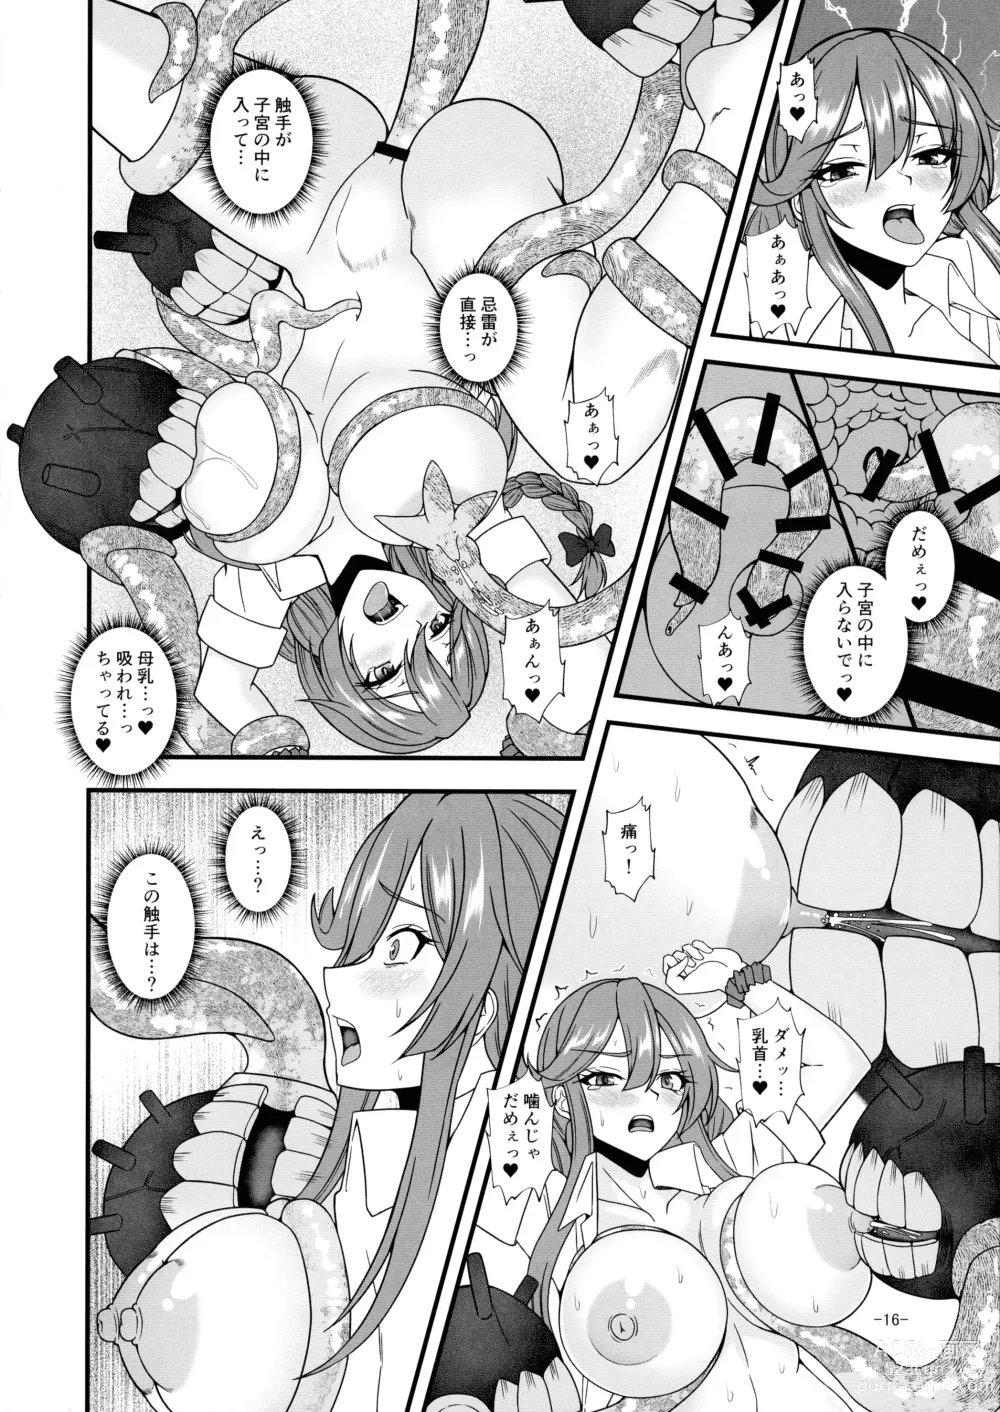 Page 16 of doujinshi Noshiro x Kirai